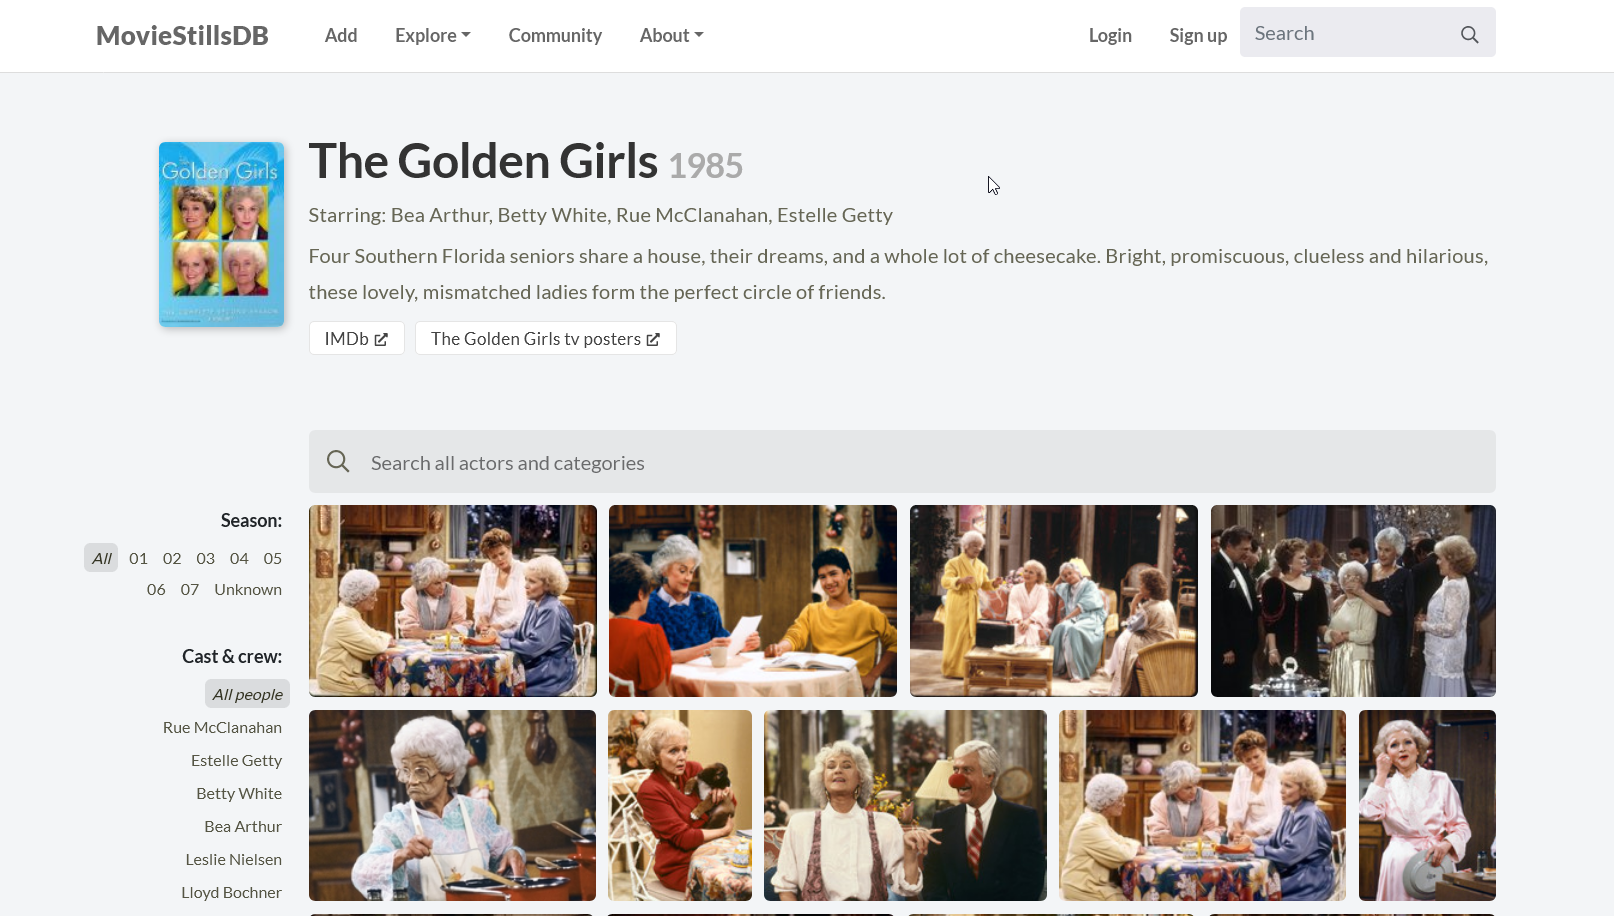 Le Golden Girls su MovieStillsDB